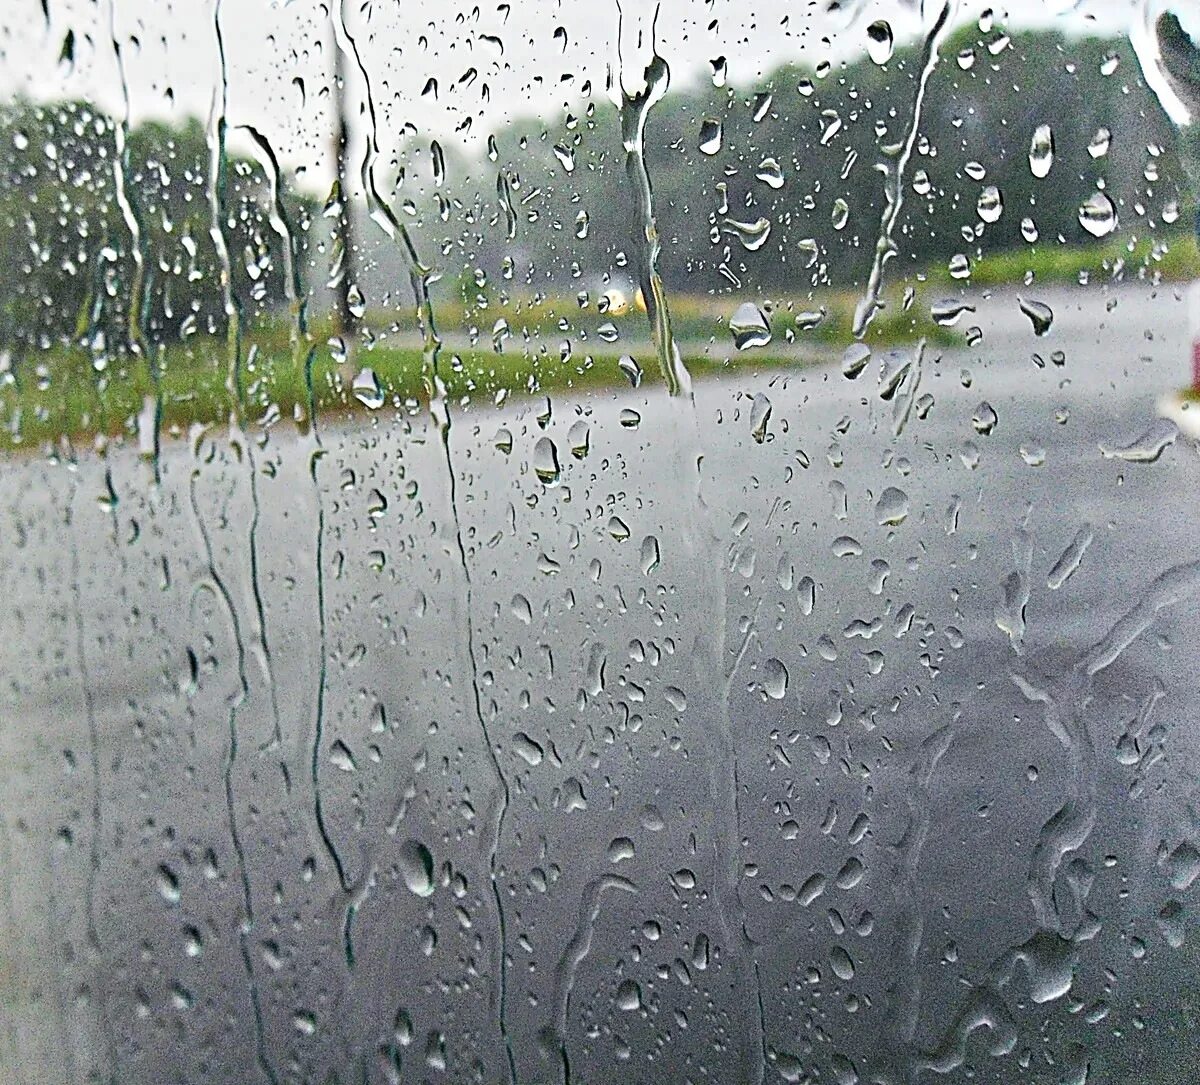 Хотя дождя. Дождь. Капли на стекле. Капли дождя на окне. Изображение дождя.